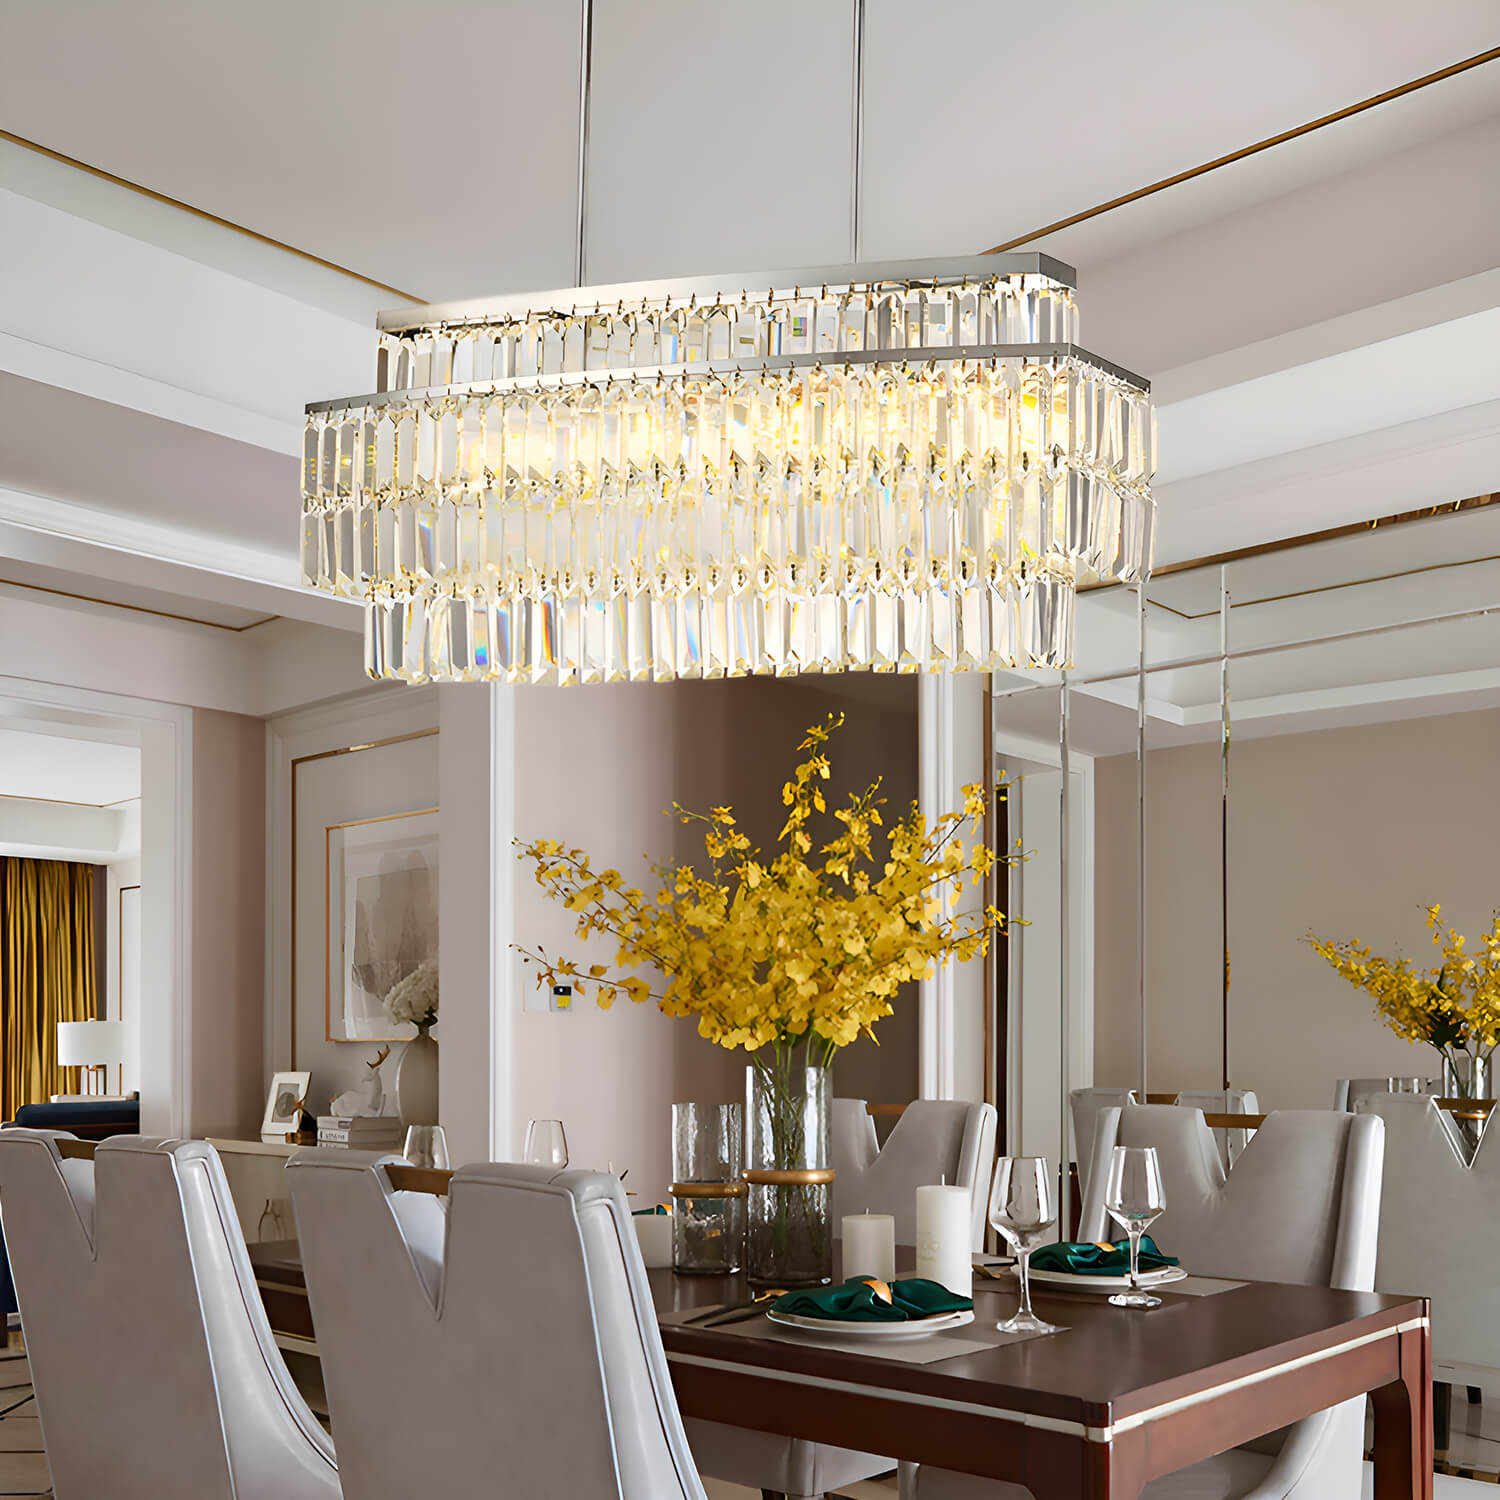 https://www.sofary.com/cdn/shop/files/modern-rectangular-crystal-chandelier-rod-type-pendant-light-dining-room-3.jpg?v=1702863925&width=1500